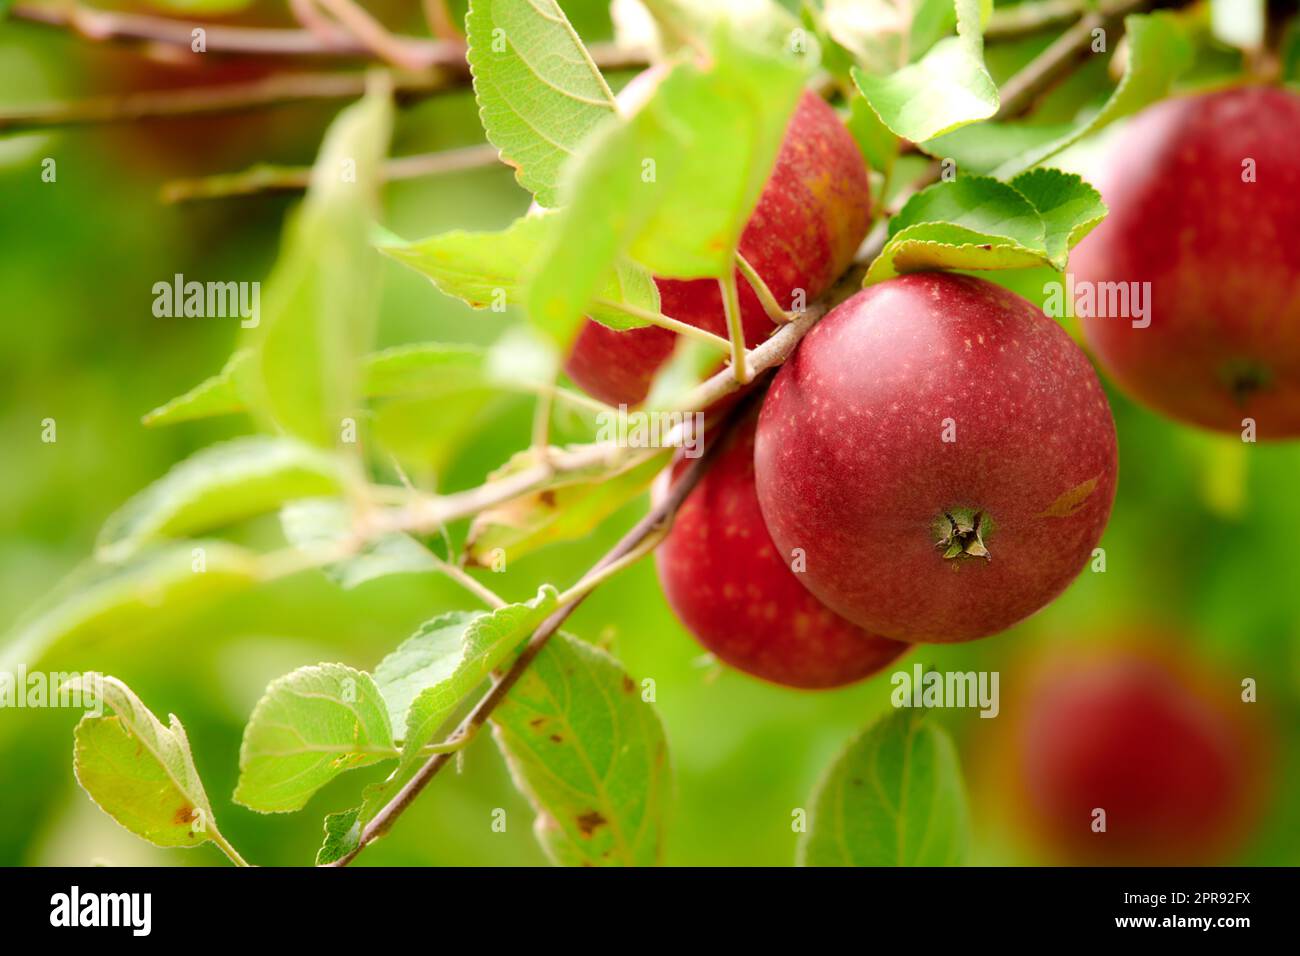 Gros plan de pommes rouges mûres qui poussent en tant qu'en-cas frais et sains ou fruits de régime pour la forme physique, le bien-être ou les soins du corps. Pommier sur ferme de verger durable dans la campagne avec des tiges ou des branches vertes luxuriantes Banque D'Images